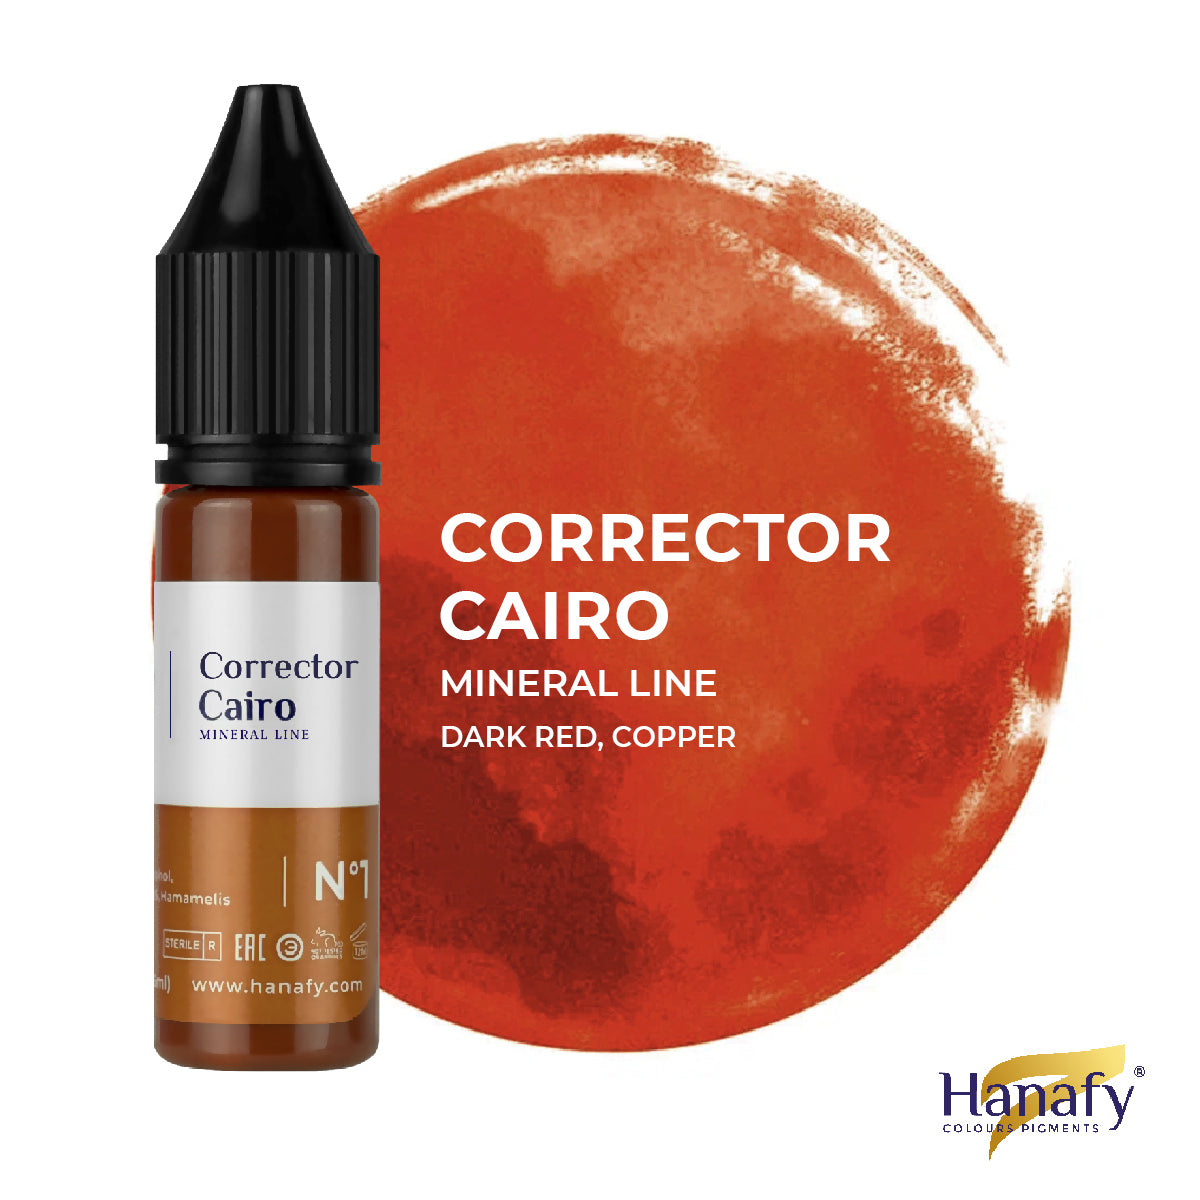 Corrector Cairo